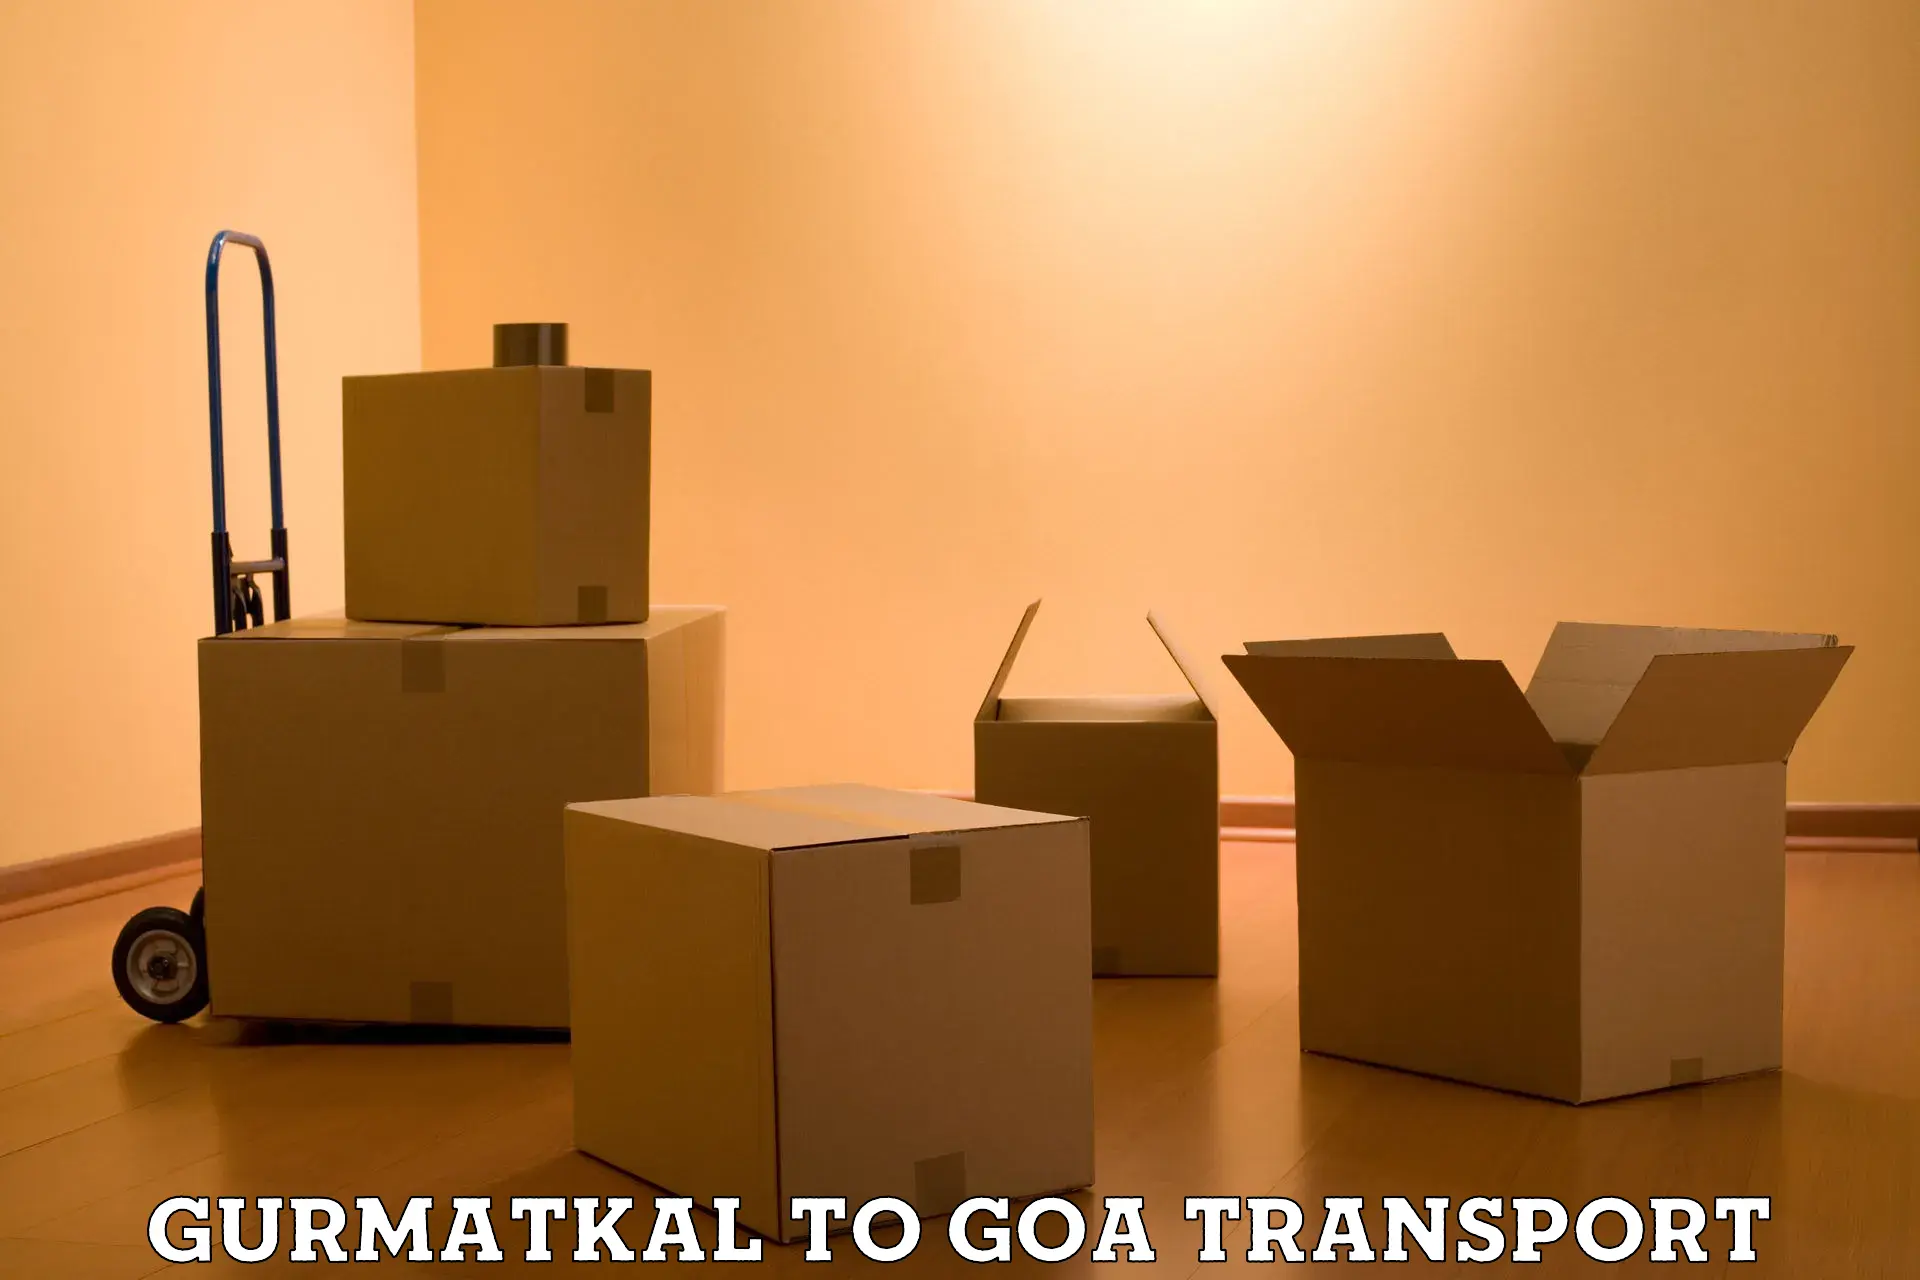 Furniture transport service Gurmatkal to Panjim